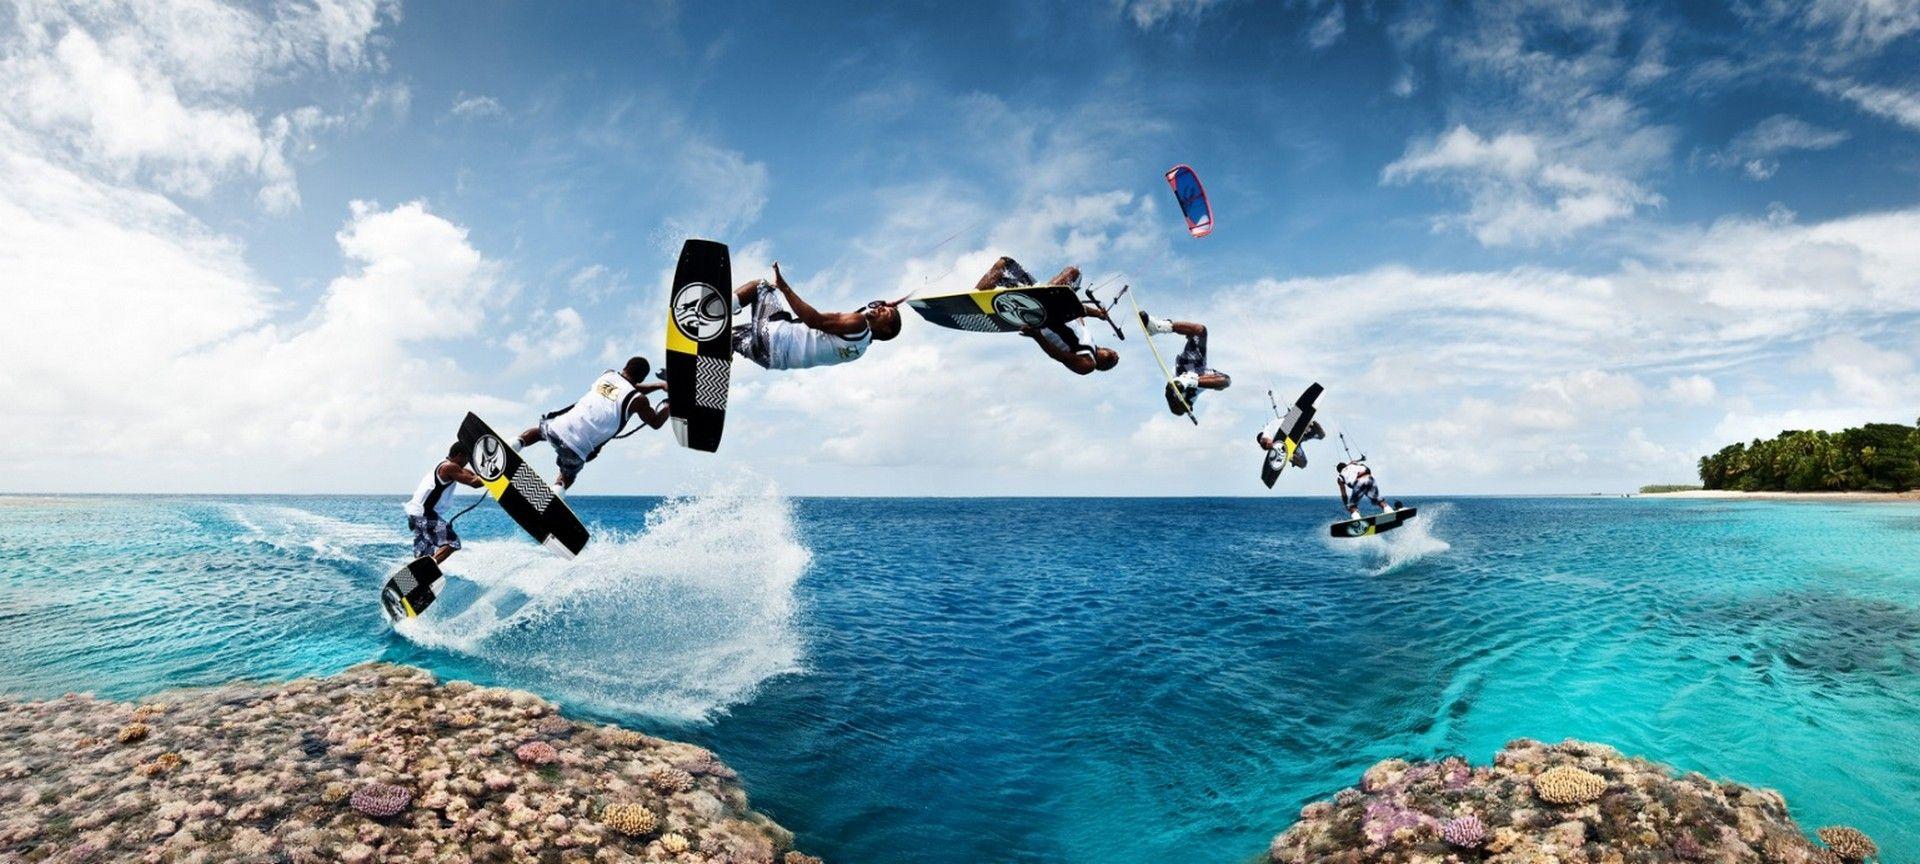 HD kitesurfing wallpaper. kitesurfing ideas. Kitesurf